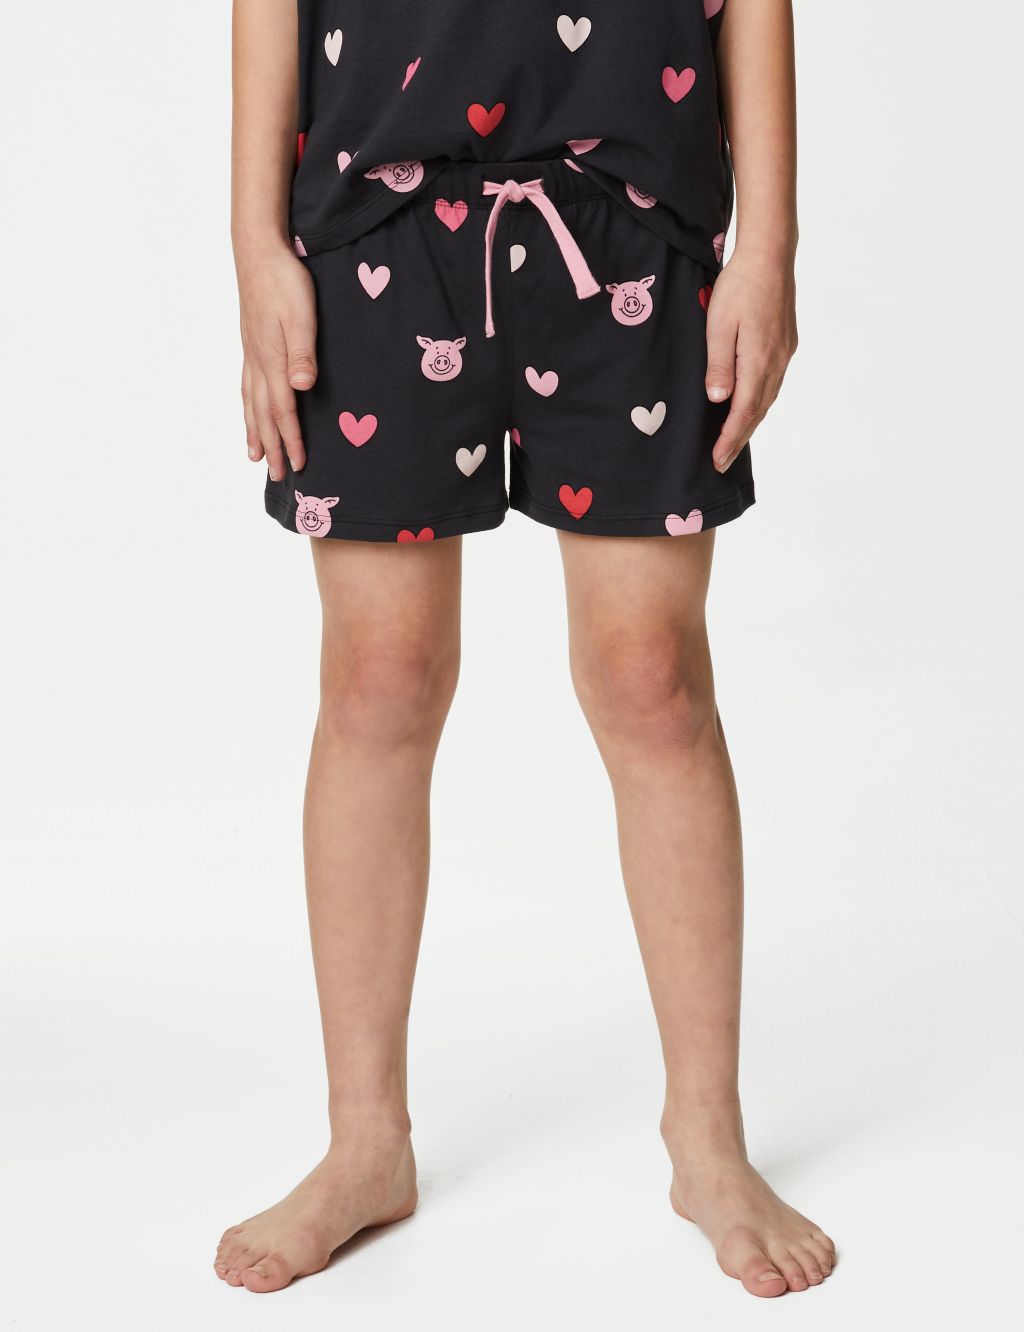 Percy Pig™ Heart Pyjamas (2-16 Yrs) image 4